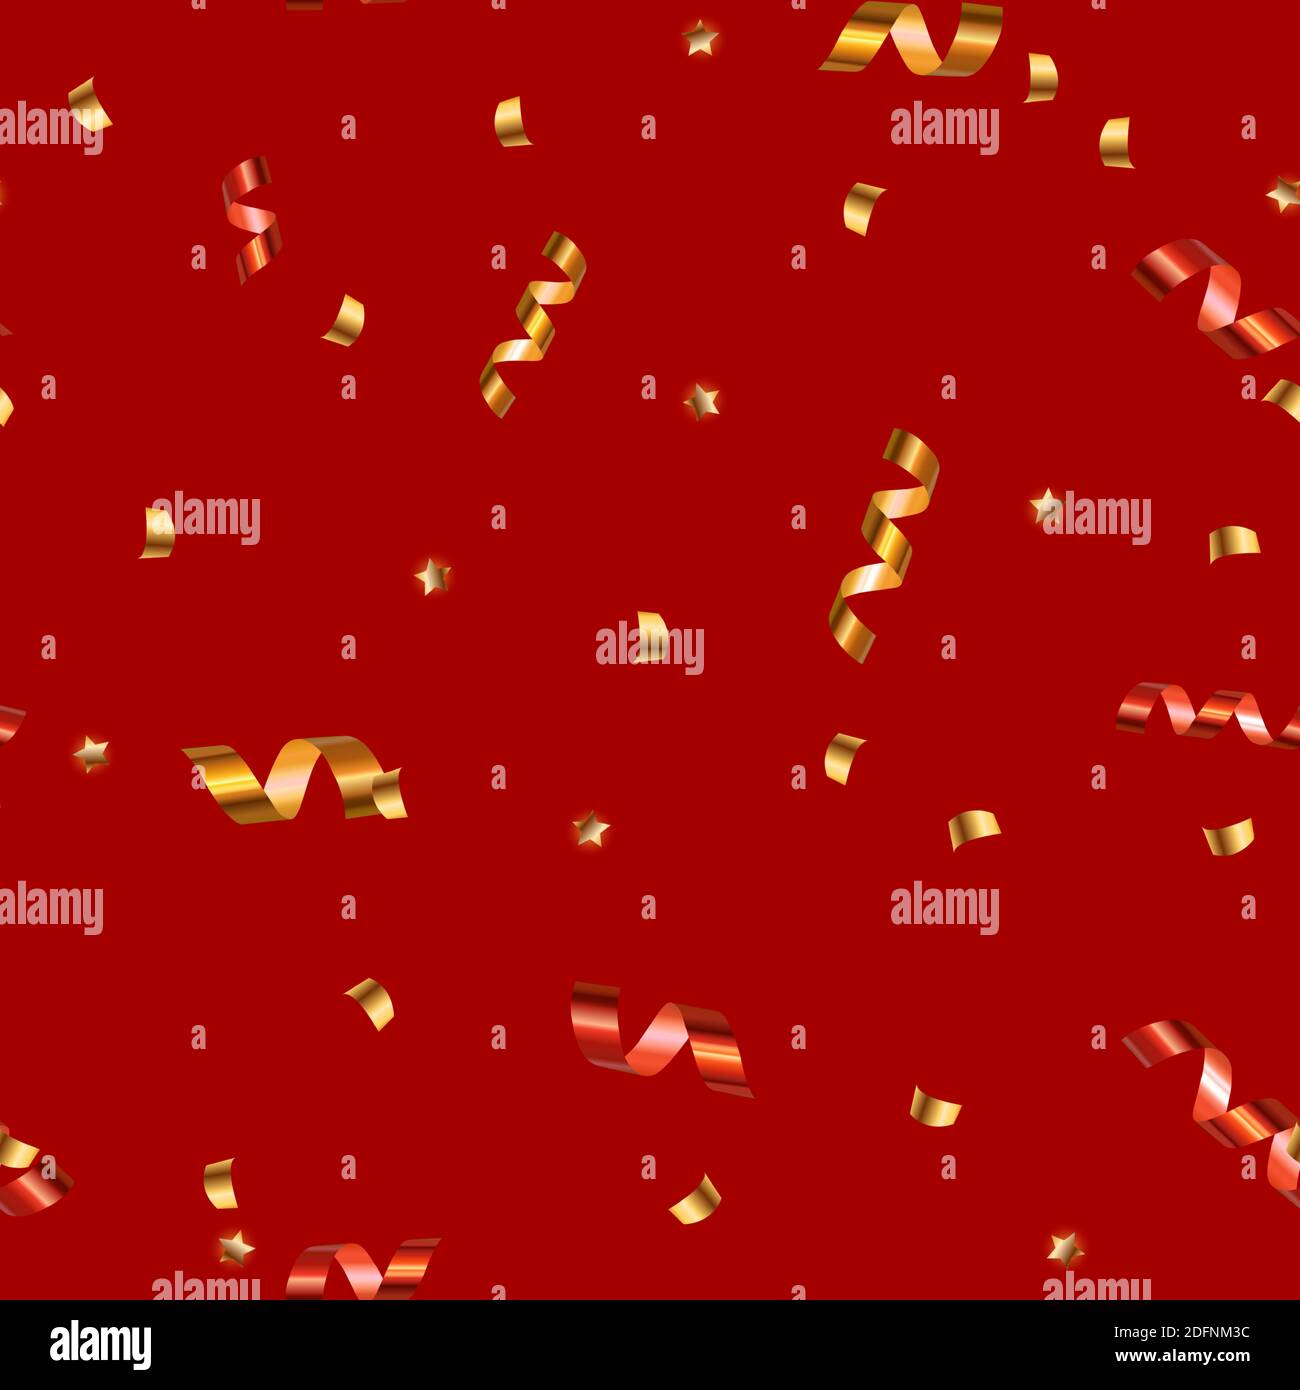 Résumé Party Confetti et étoiles fond de motif sans couture. Illustration vectorielle EPS10 Illustration de Vecteur